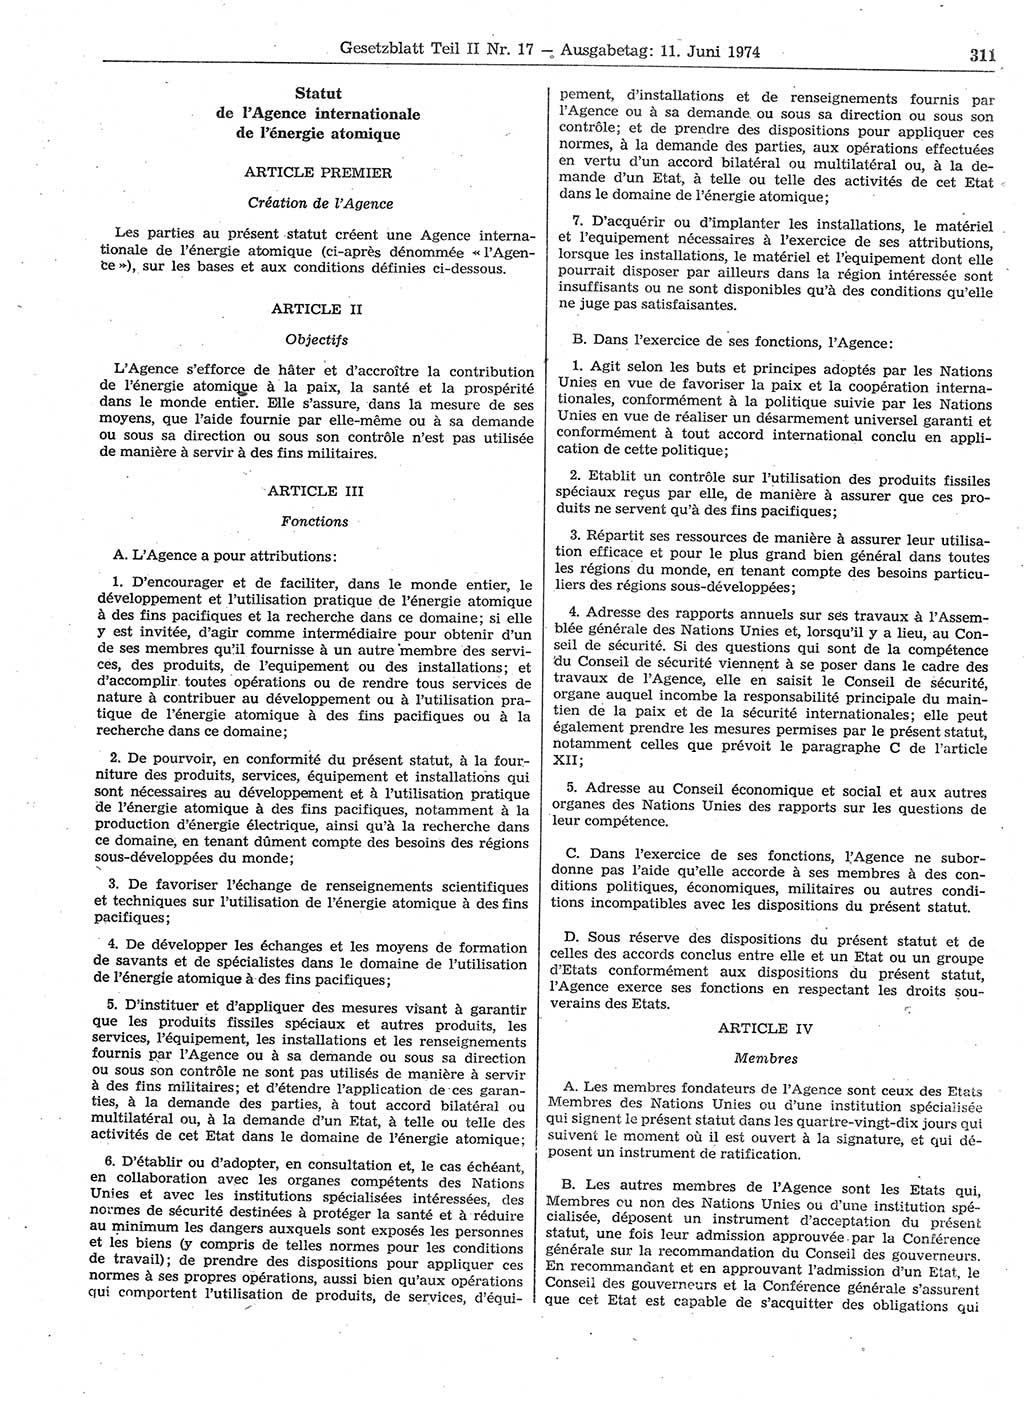 Gesetzblatt (GBl.) der Deutschen Demokratischen Republik (DDR) Teil ⅠⅠ 1974, Seite 311 (GBl. DDR ⅠⅠ 1974, S. 311)